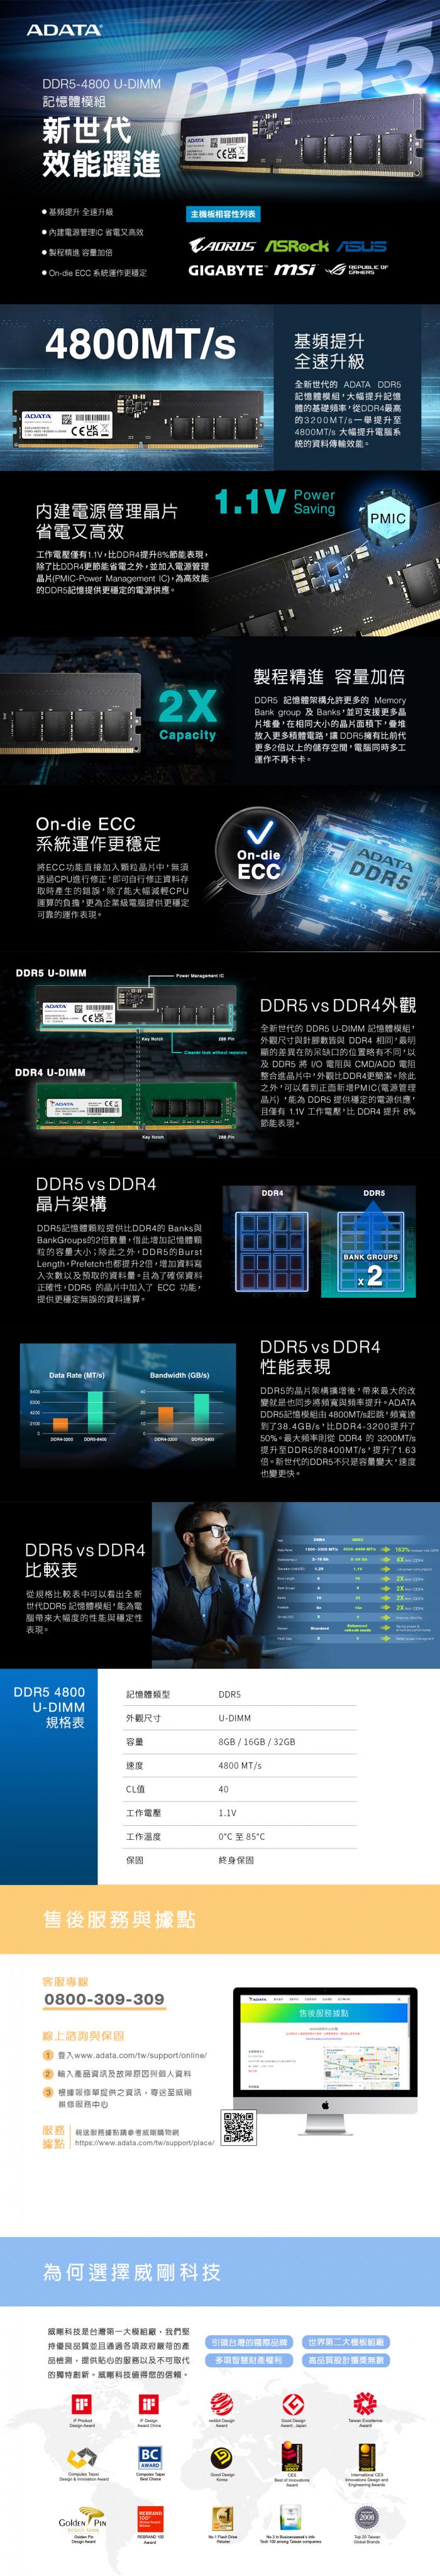 威剛 16G DDR5-4800